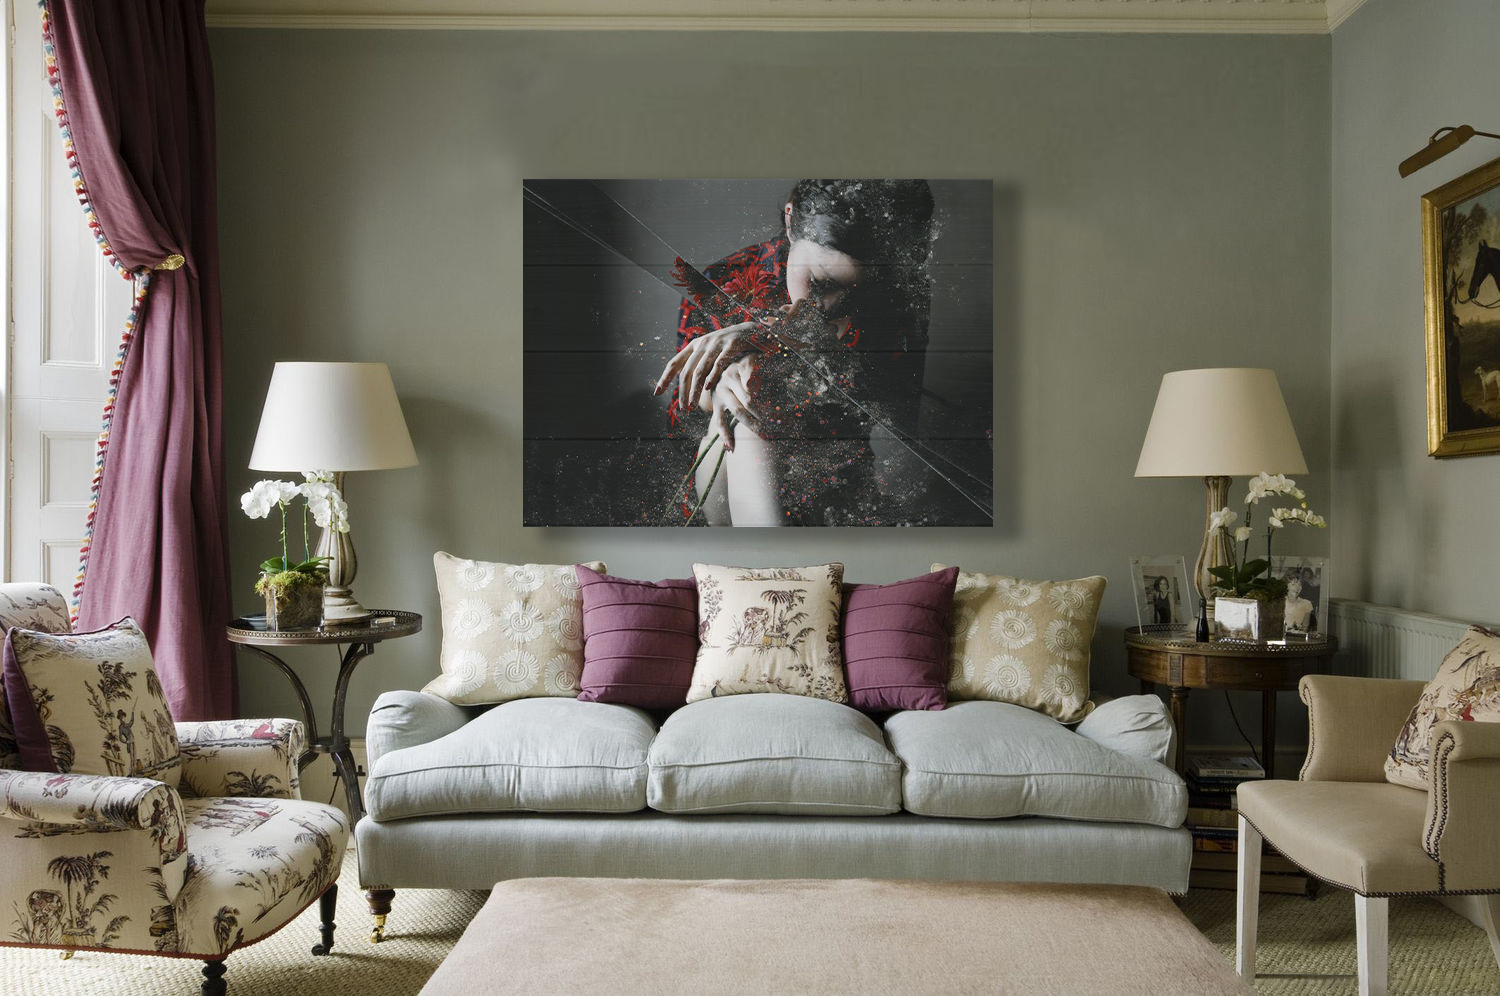 Картины над диваном в гостиной фото в интерьере